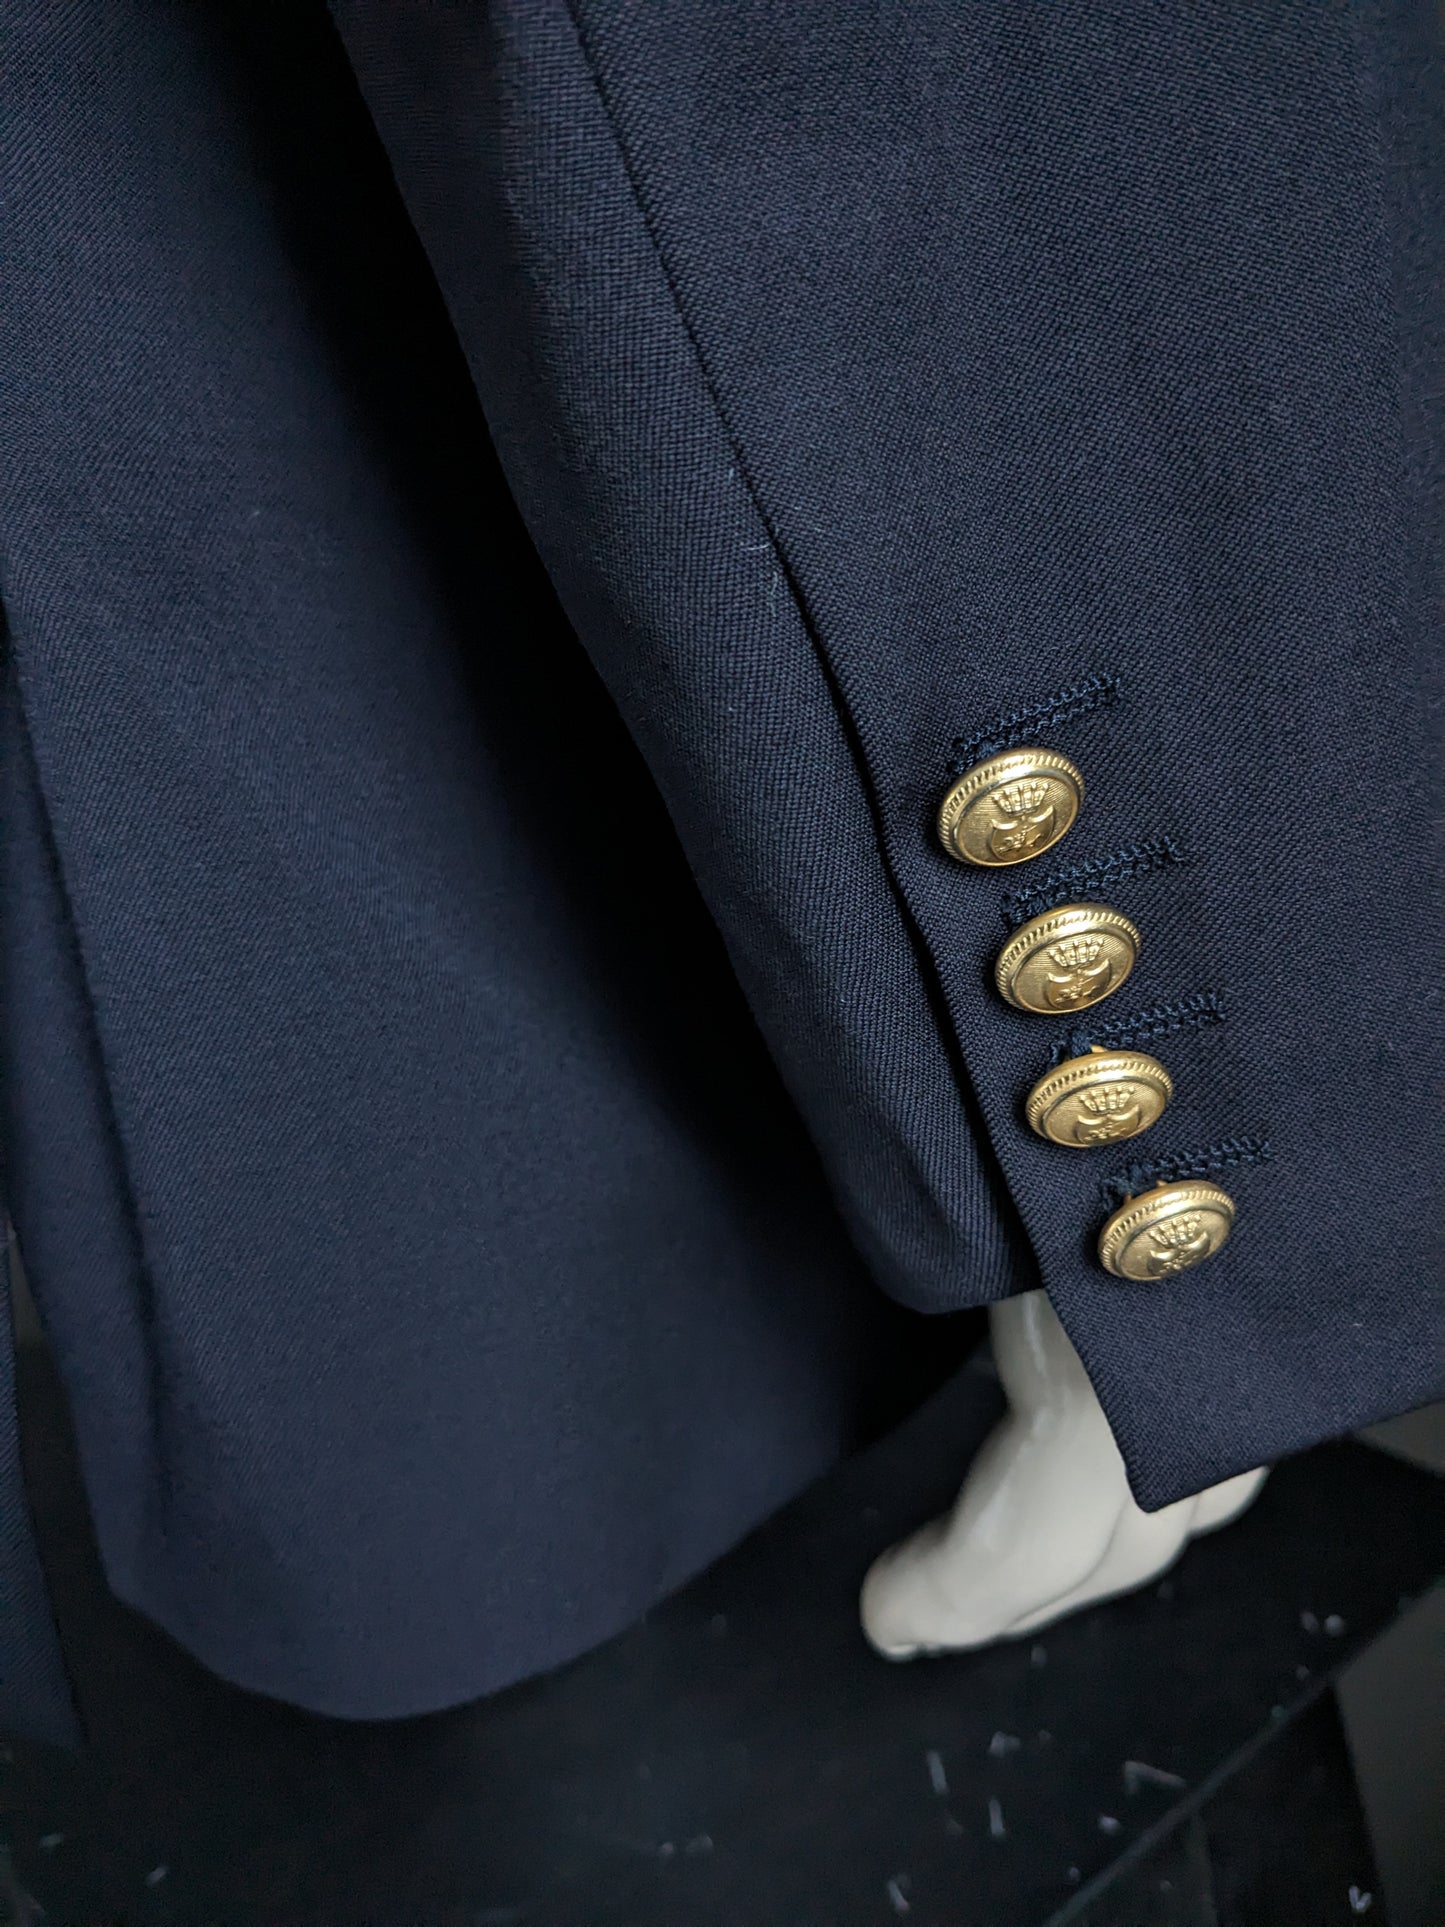 Chaqueta vintage de lana Scapa con hermosos botones. Color azul oscuro. Tamaño 58 / xl.